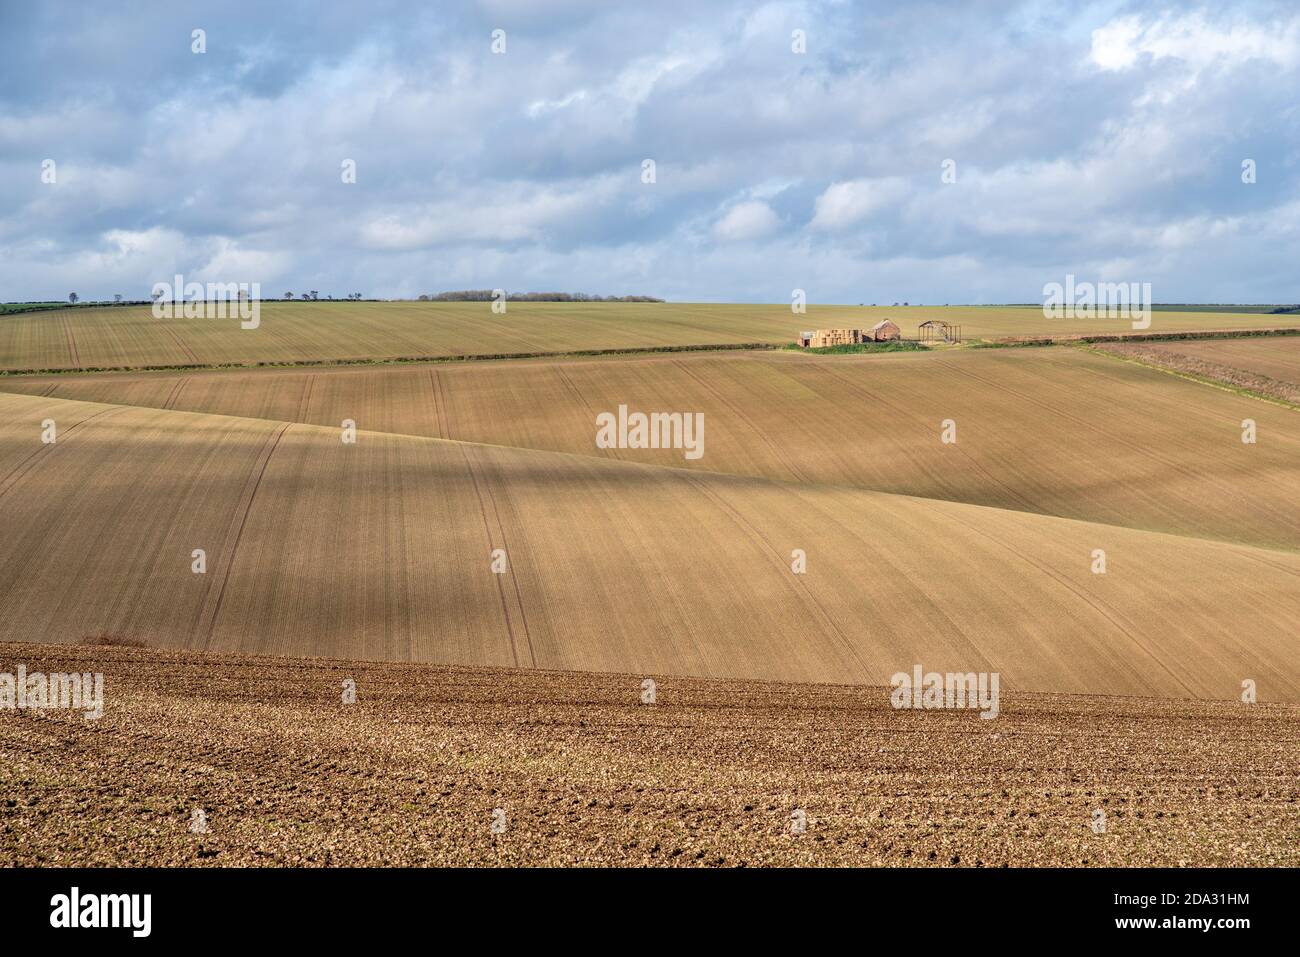 Vista di una fattoria deralict su campi ondulati arati a strisce in una giornata di sole con cielo nuvoloso. Foto Stock